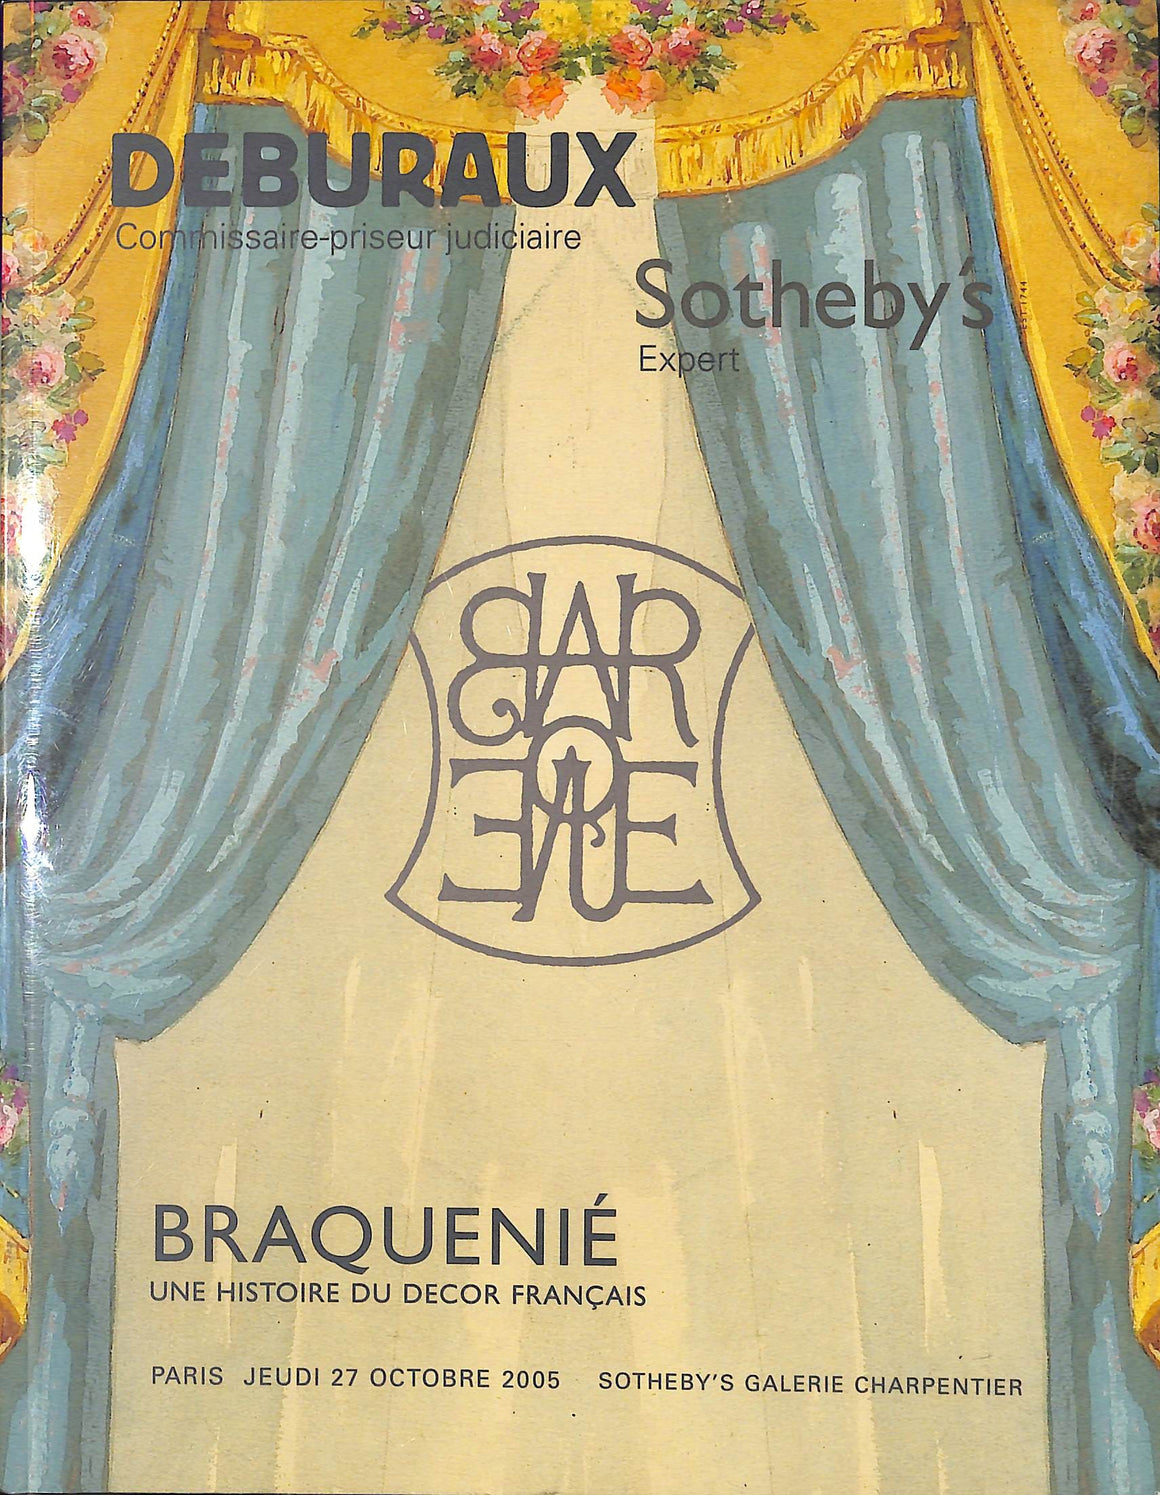 "Deburaux: Une Histoire du Decor Francais" Braquenie